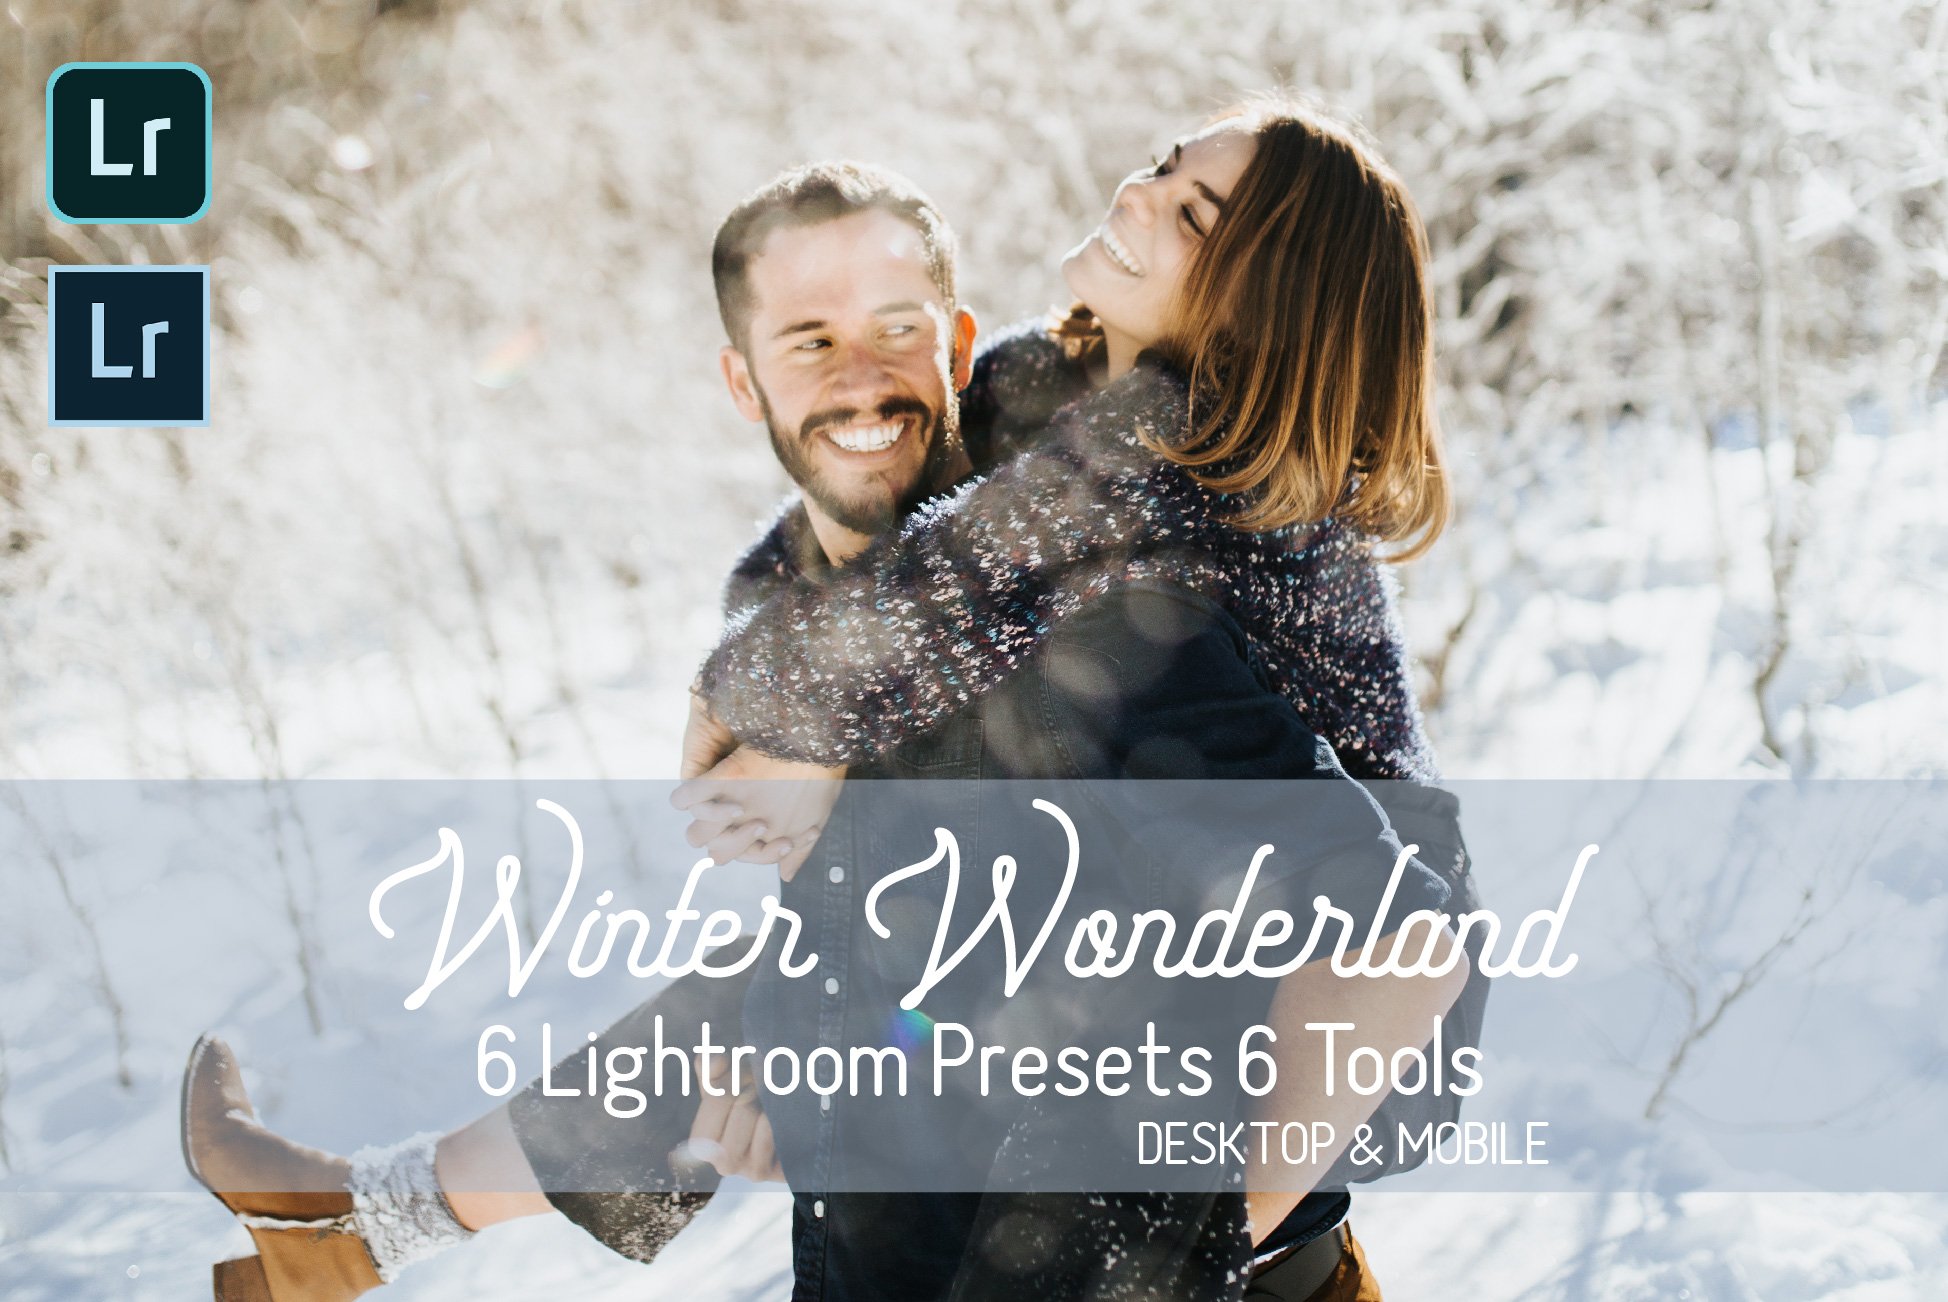 Winter Wonderland Lightroom Presetscover image.